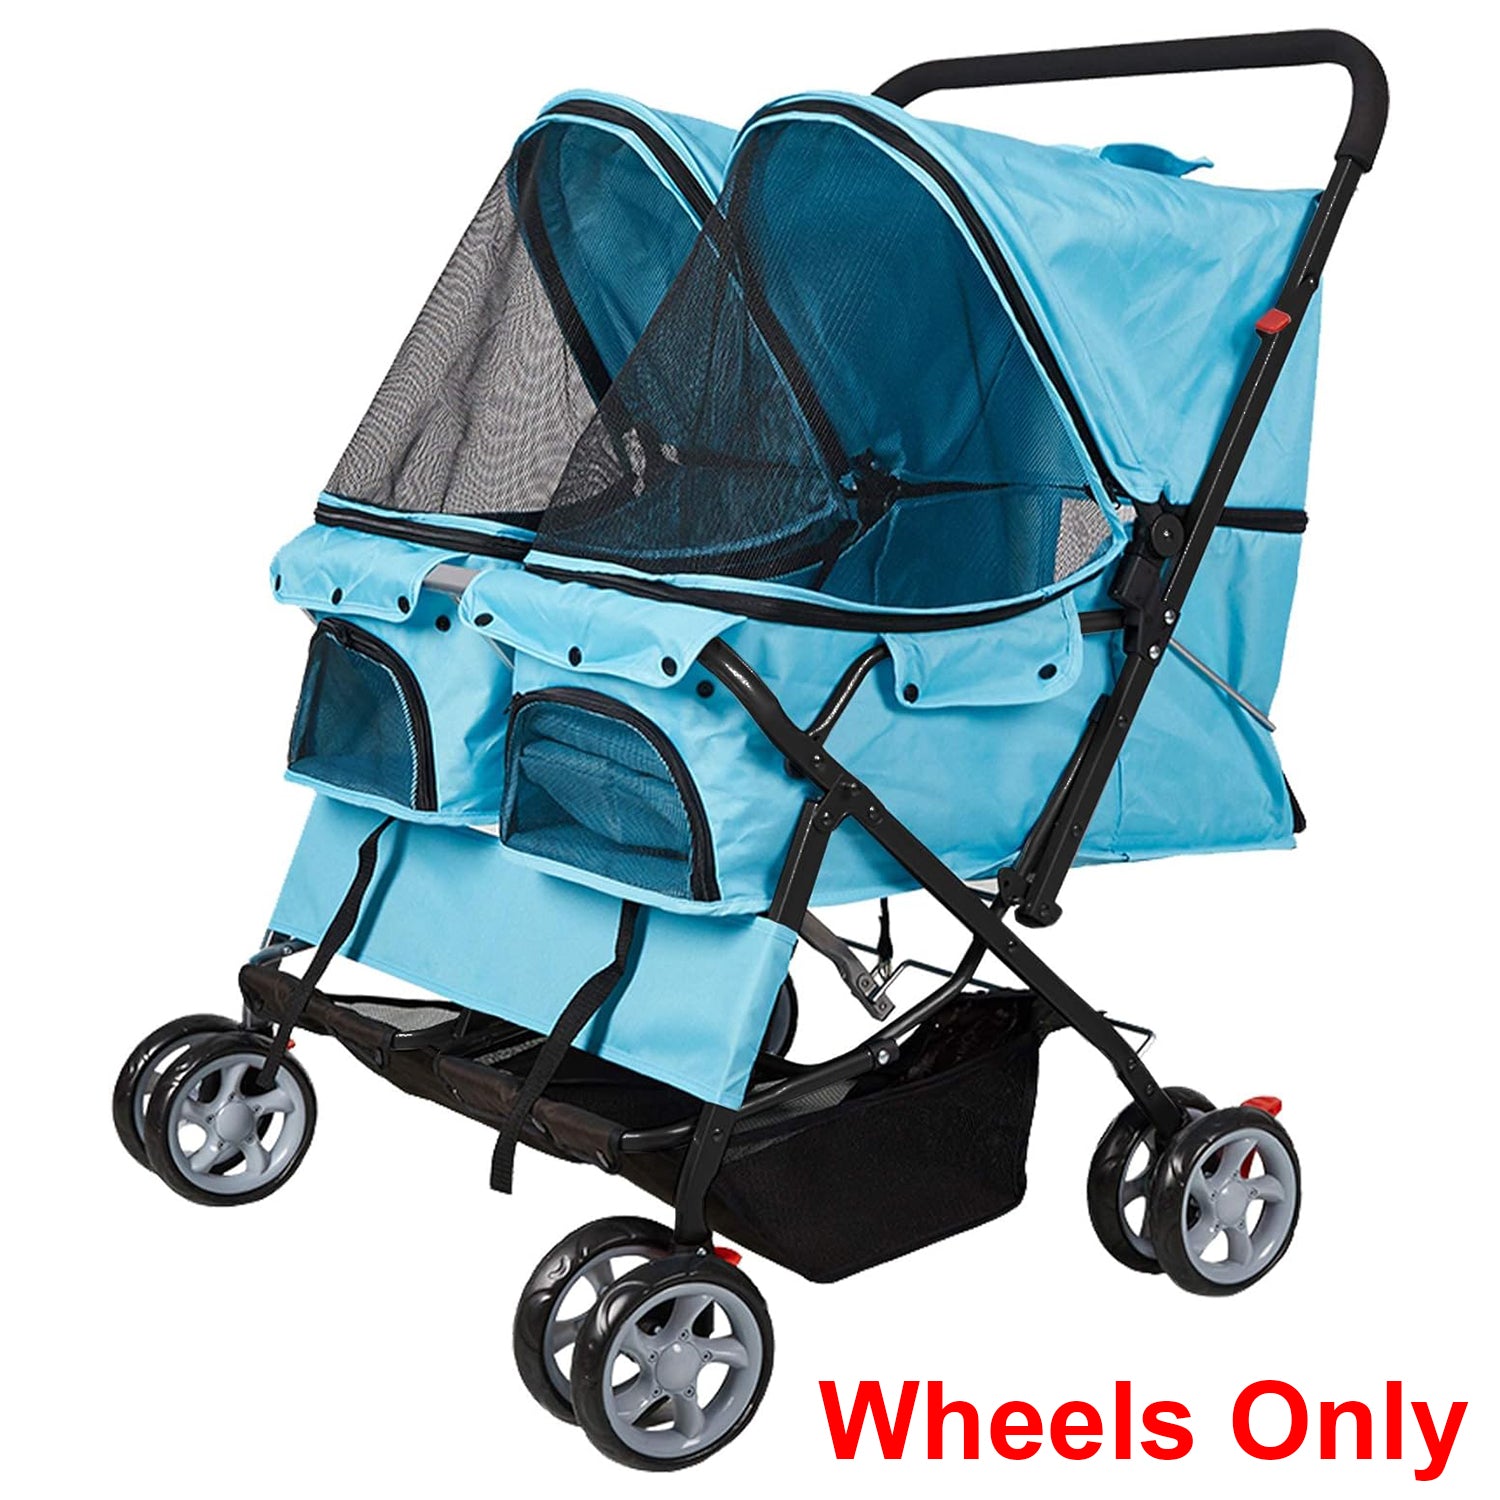 4 Pcs Pet Stroller Wheels Set for KM2487, 2 Rear wheels w/brake and 2 Front wheels w/Fixer